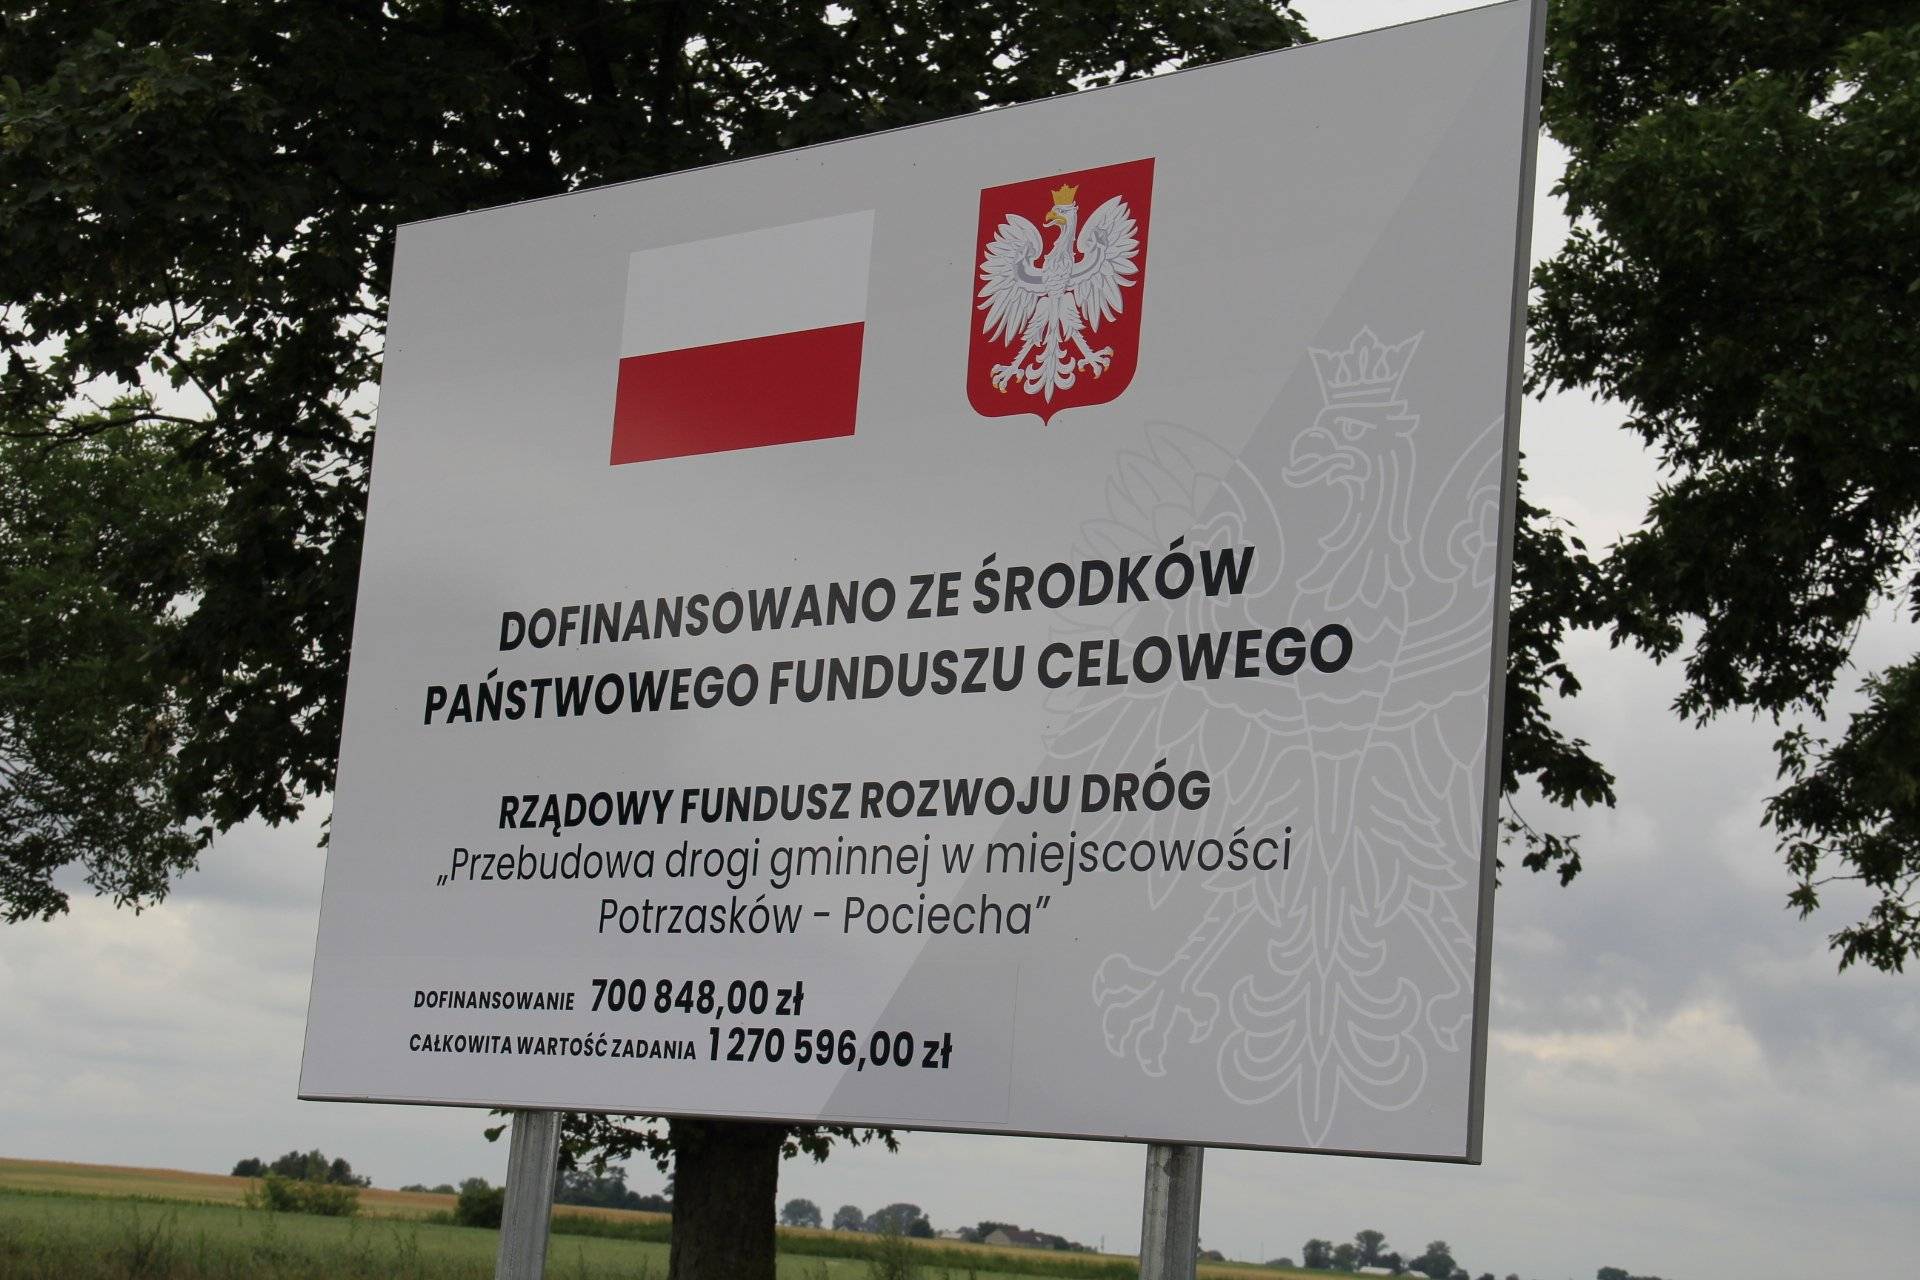 Uroczyste otwarcie drogi w miejscowościach Potrzasków - Pociecha finansowanej  z 